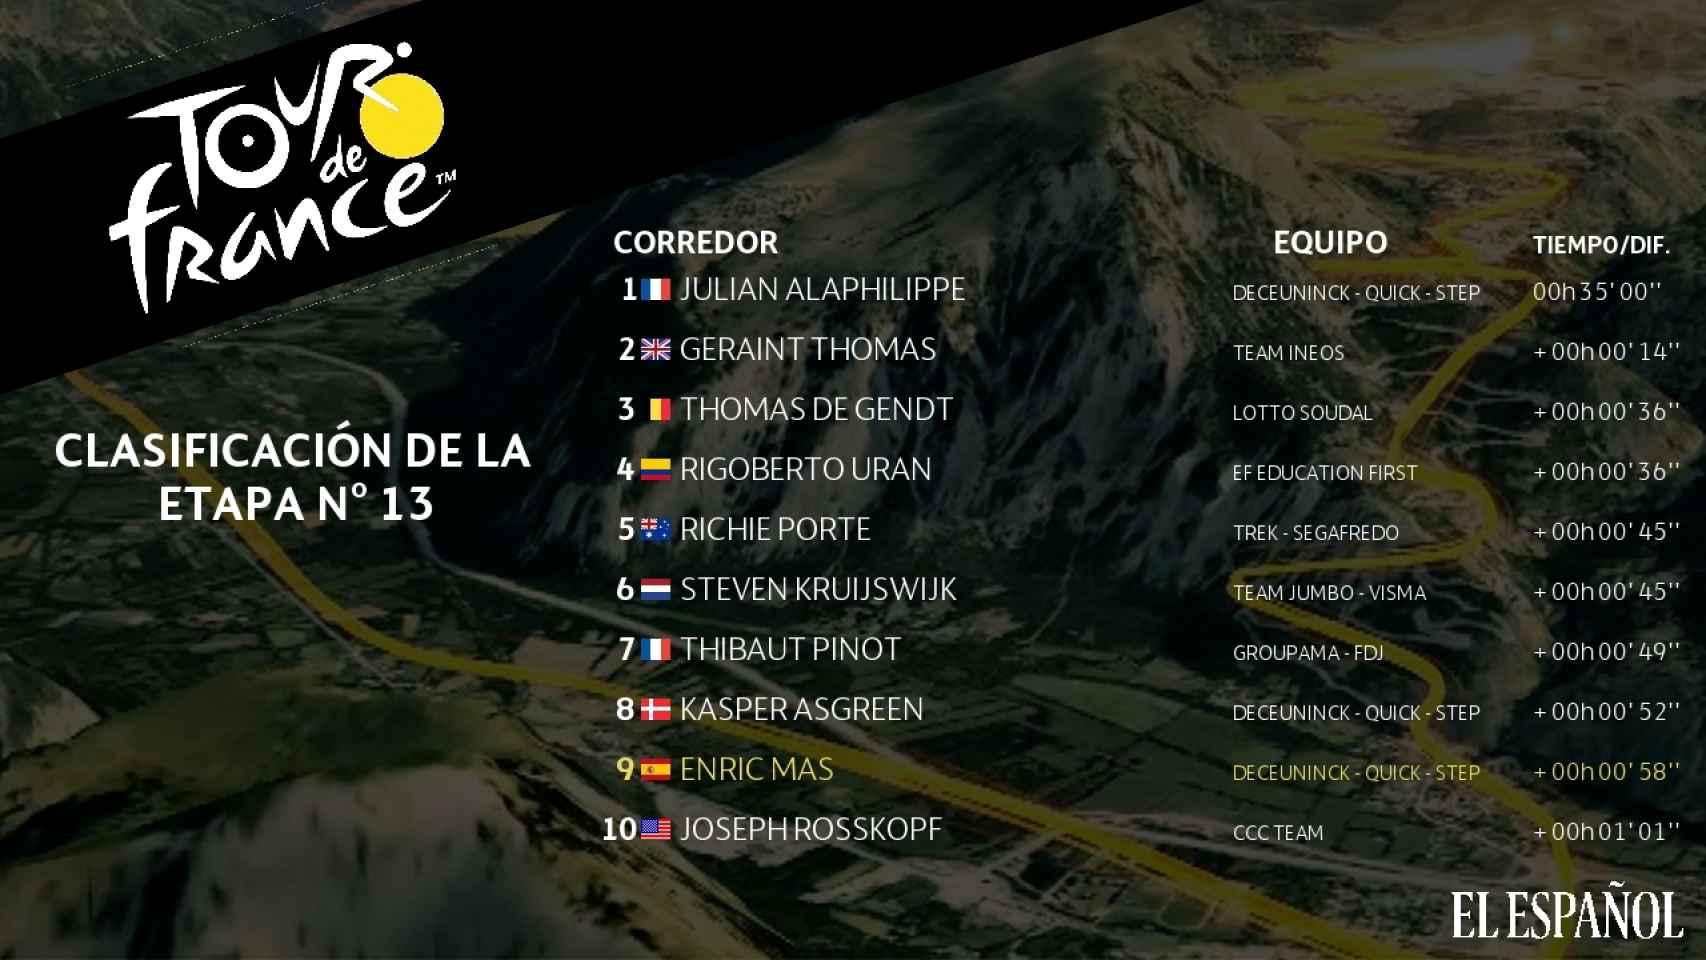 Clasificación de la etapa nº13 del Tour de Francia